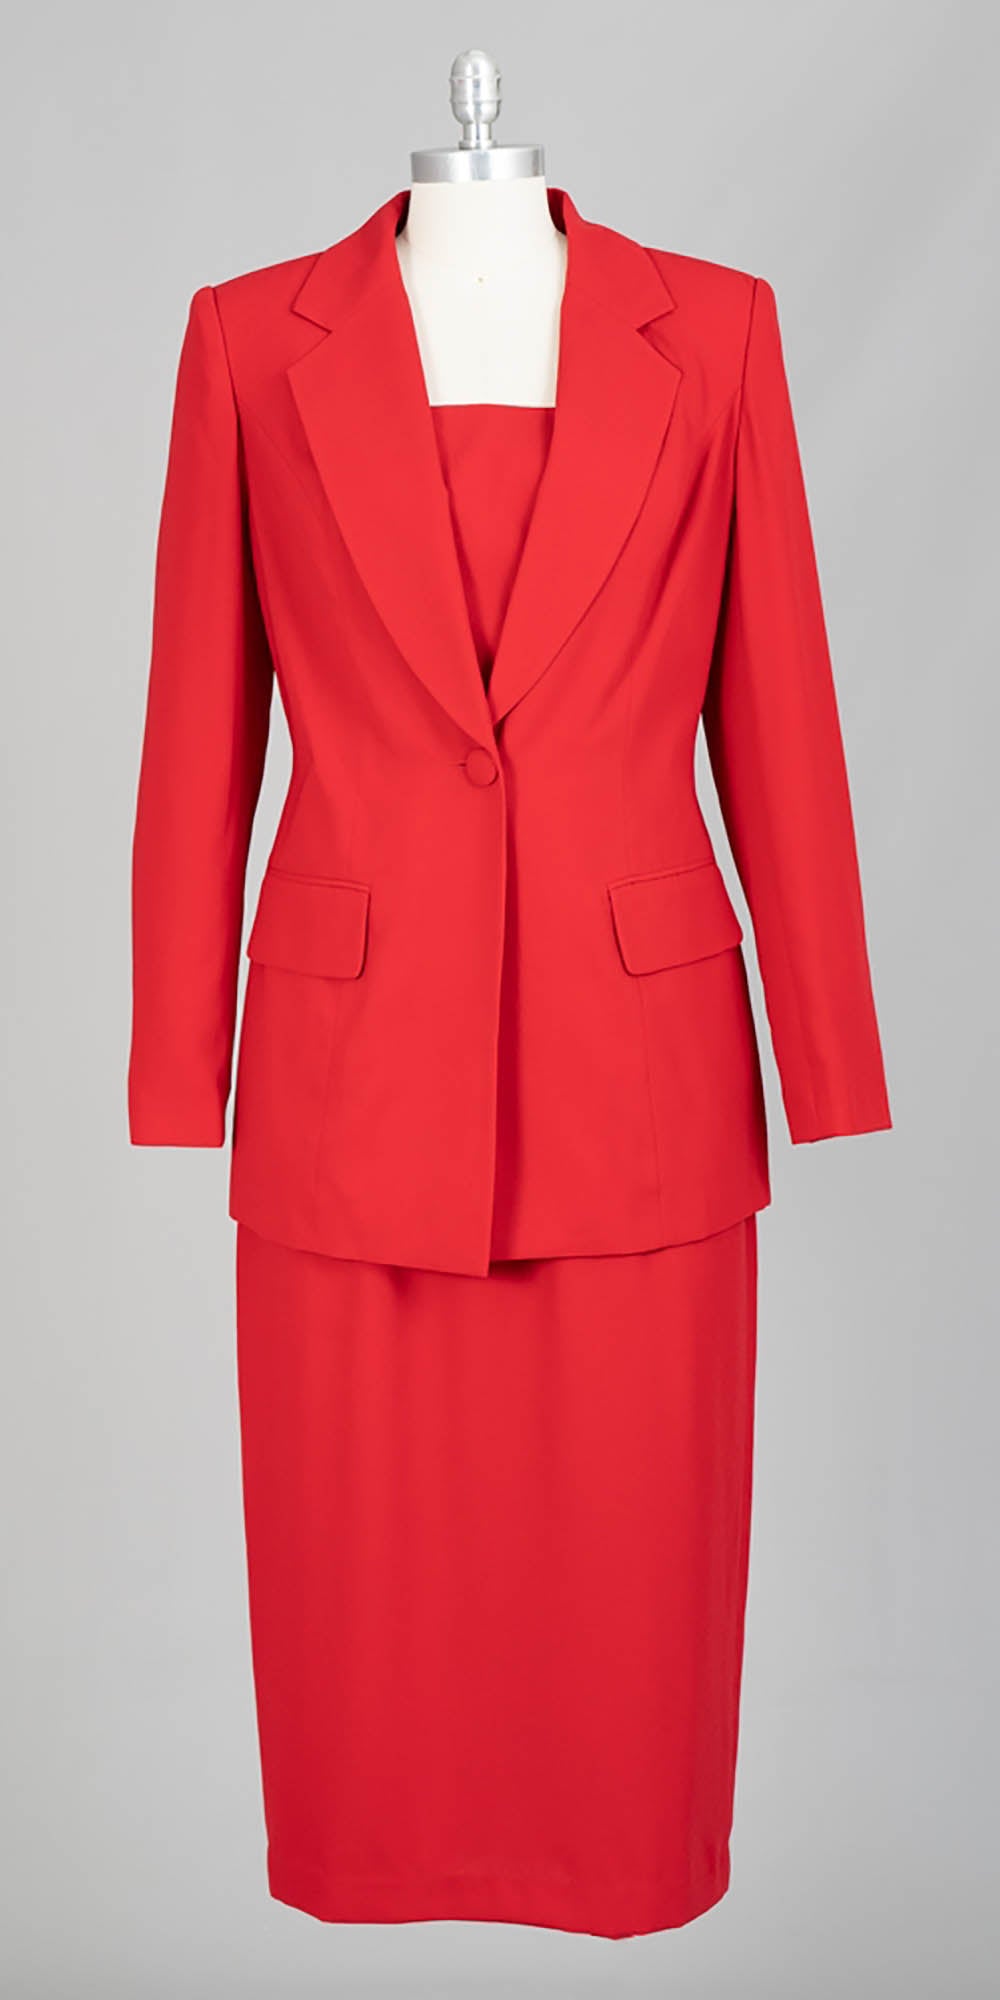 Aussie Austine - 12441 - Red - 2pc Skirt Suit